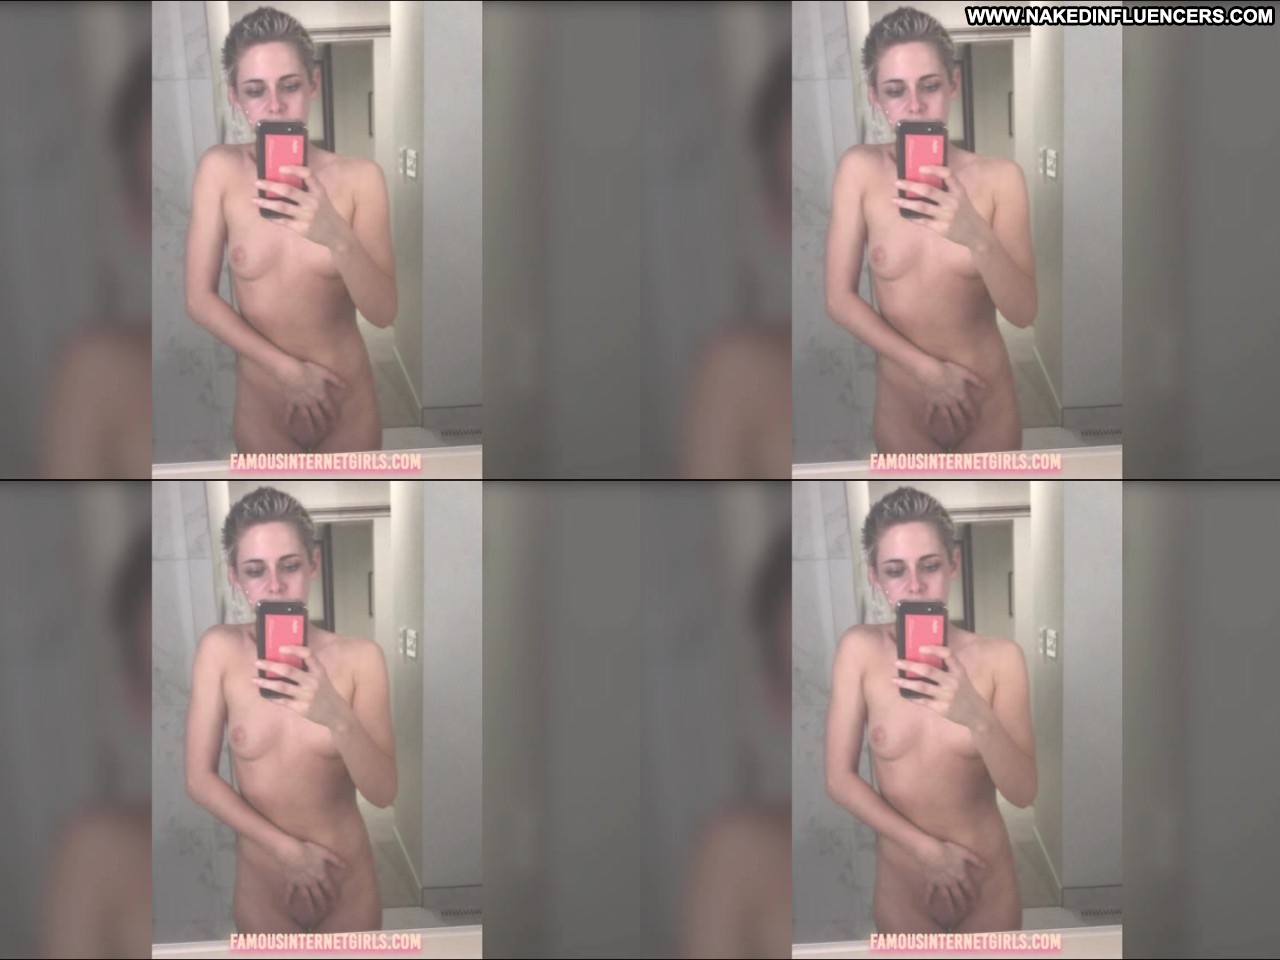 Kristen Stewart Straight Nude Selfies Leak Video Influencer Hot Selfies